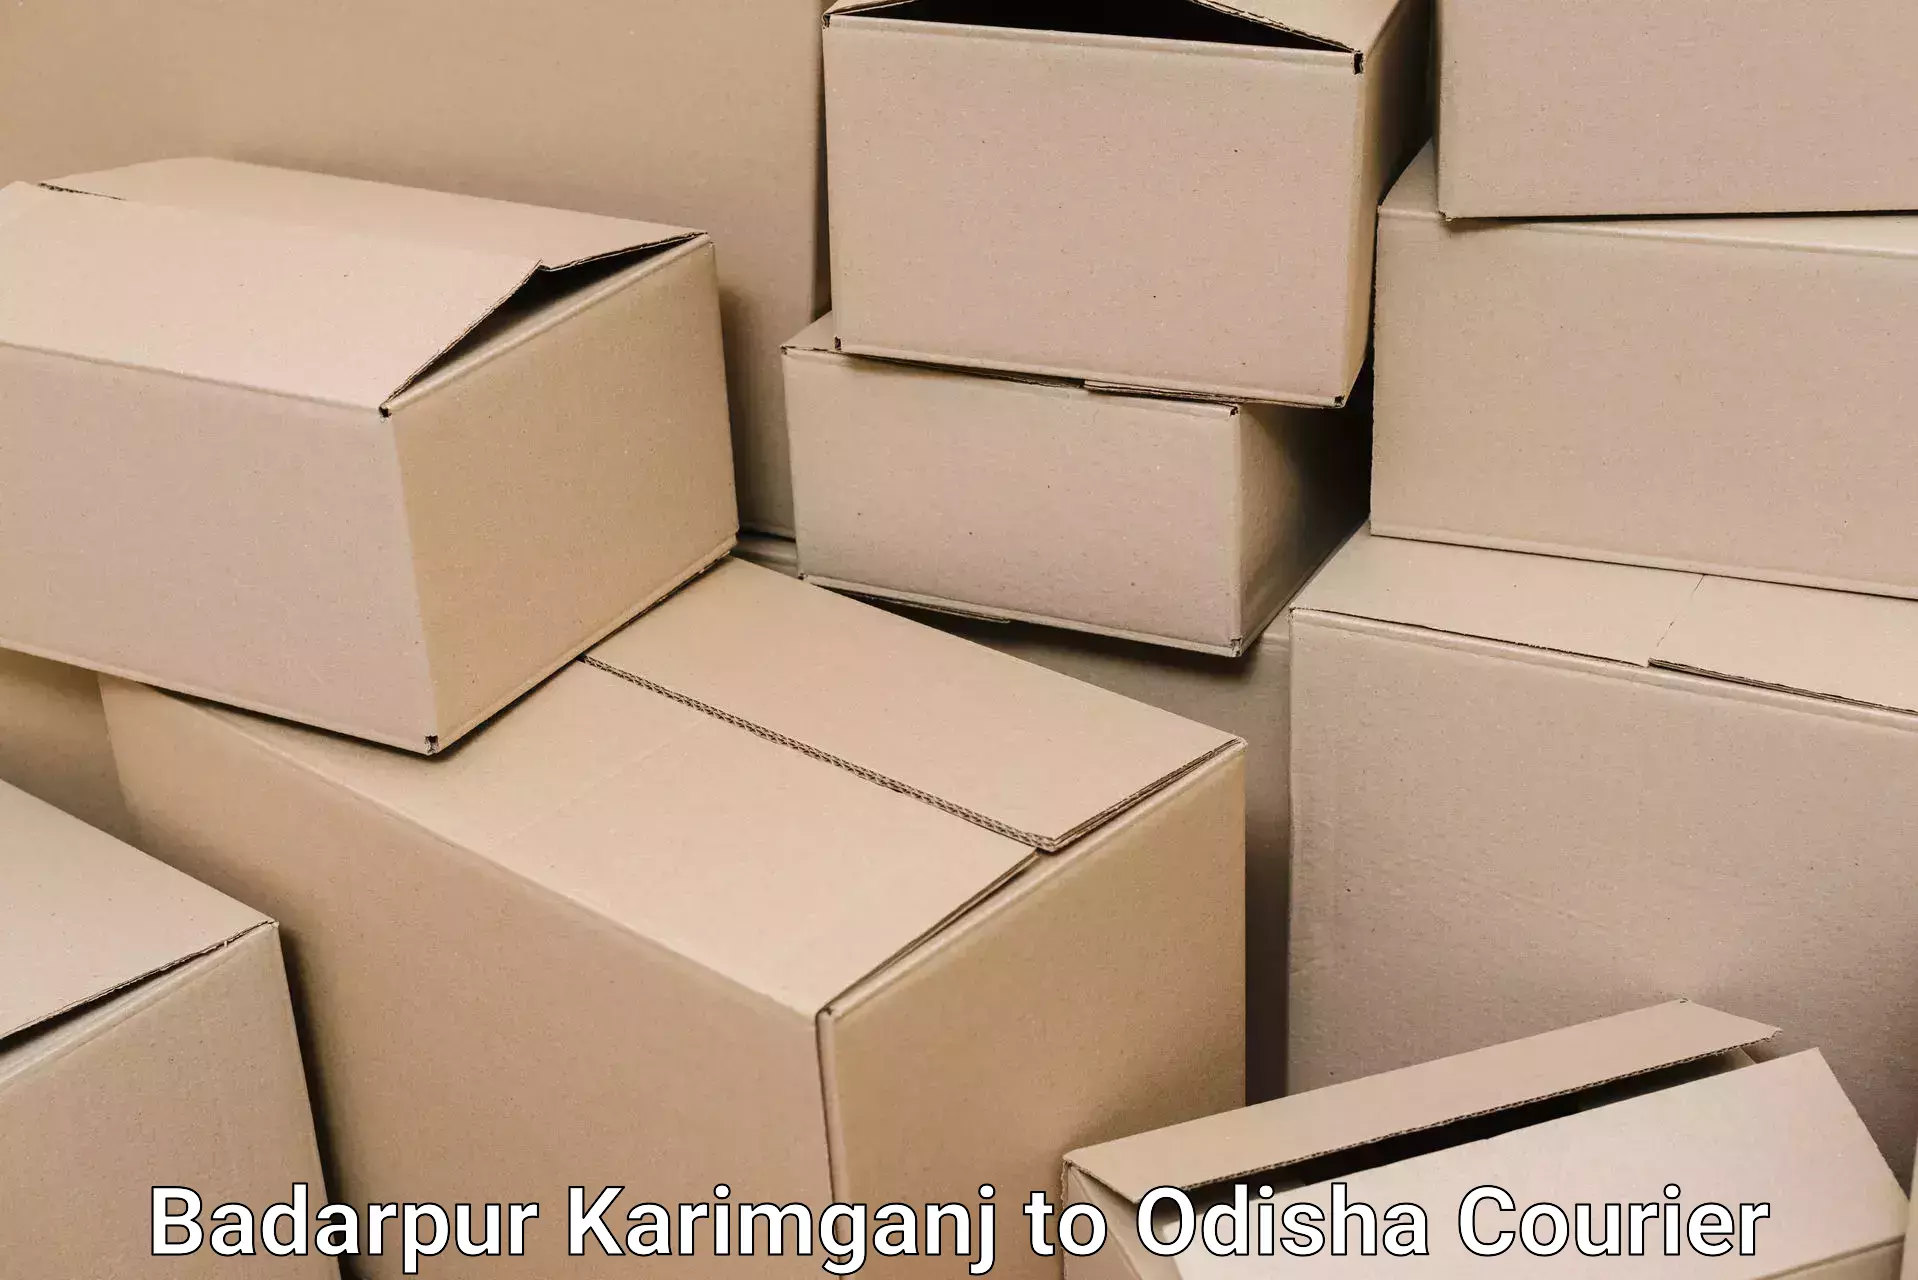 Household moving experts Badarpur Karimganj to Jagatsinghpur